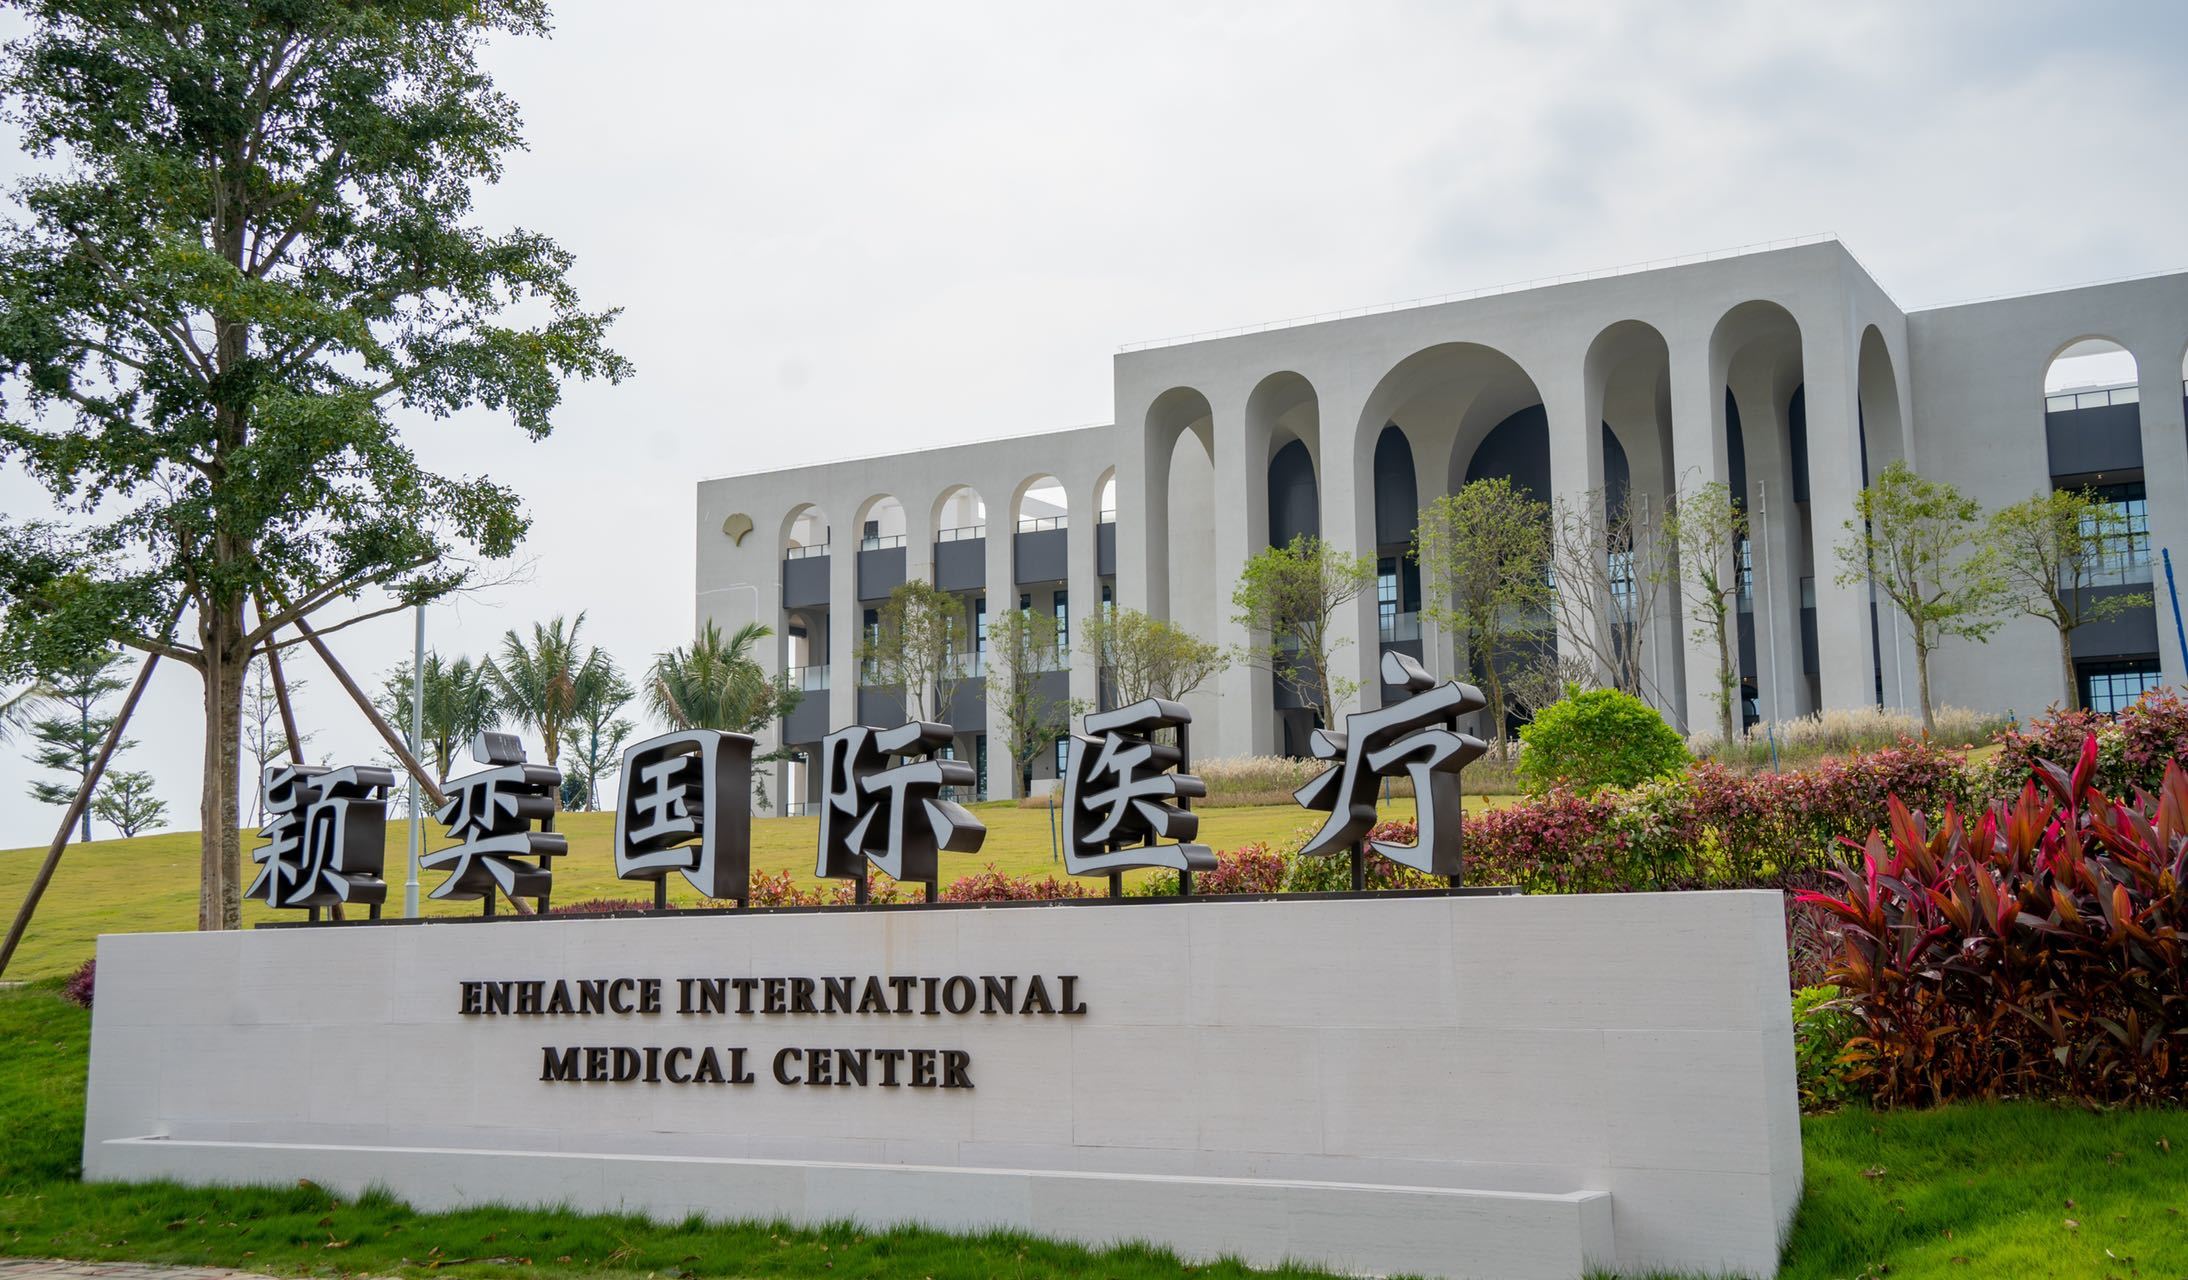 颖奕国际医疗中心将落户海南市民可享受国际医疗服务